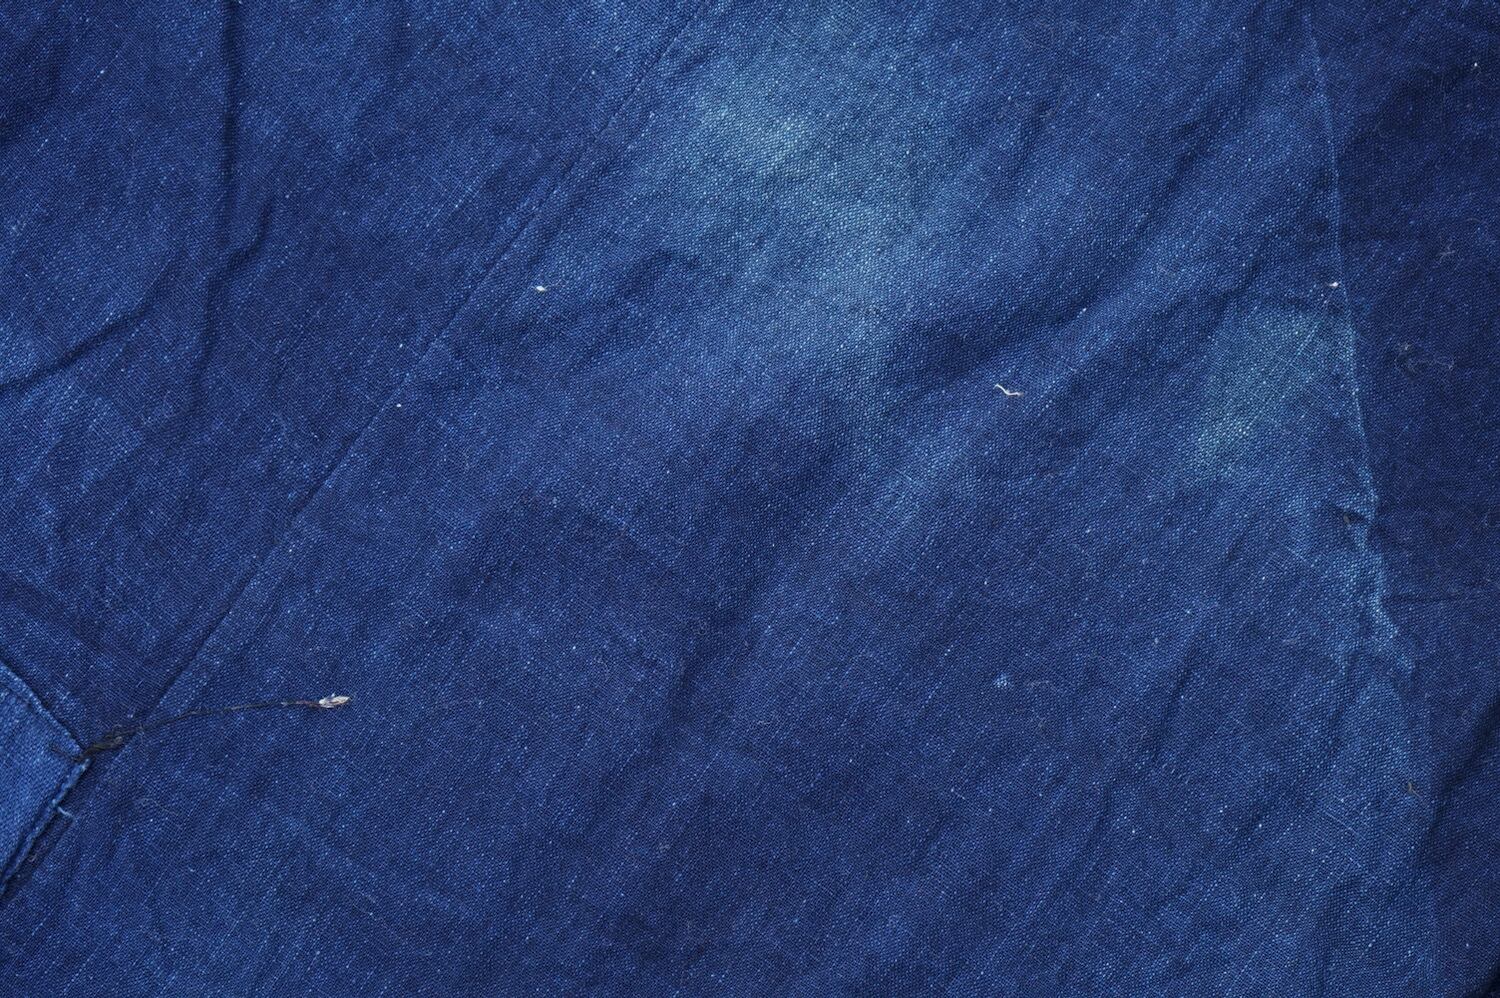 412 ボロ 襤褸 藍染 藍無地 木綿古布 継ぎ接ぎ 継ぎ当て アンティーク 